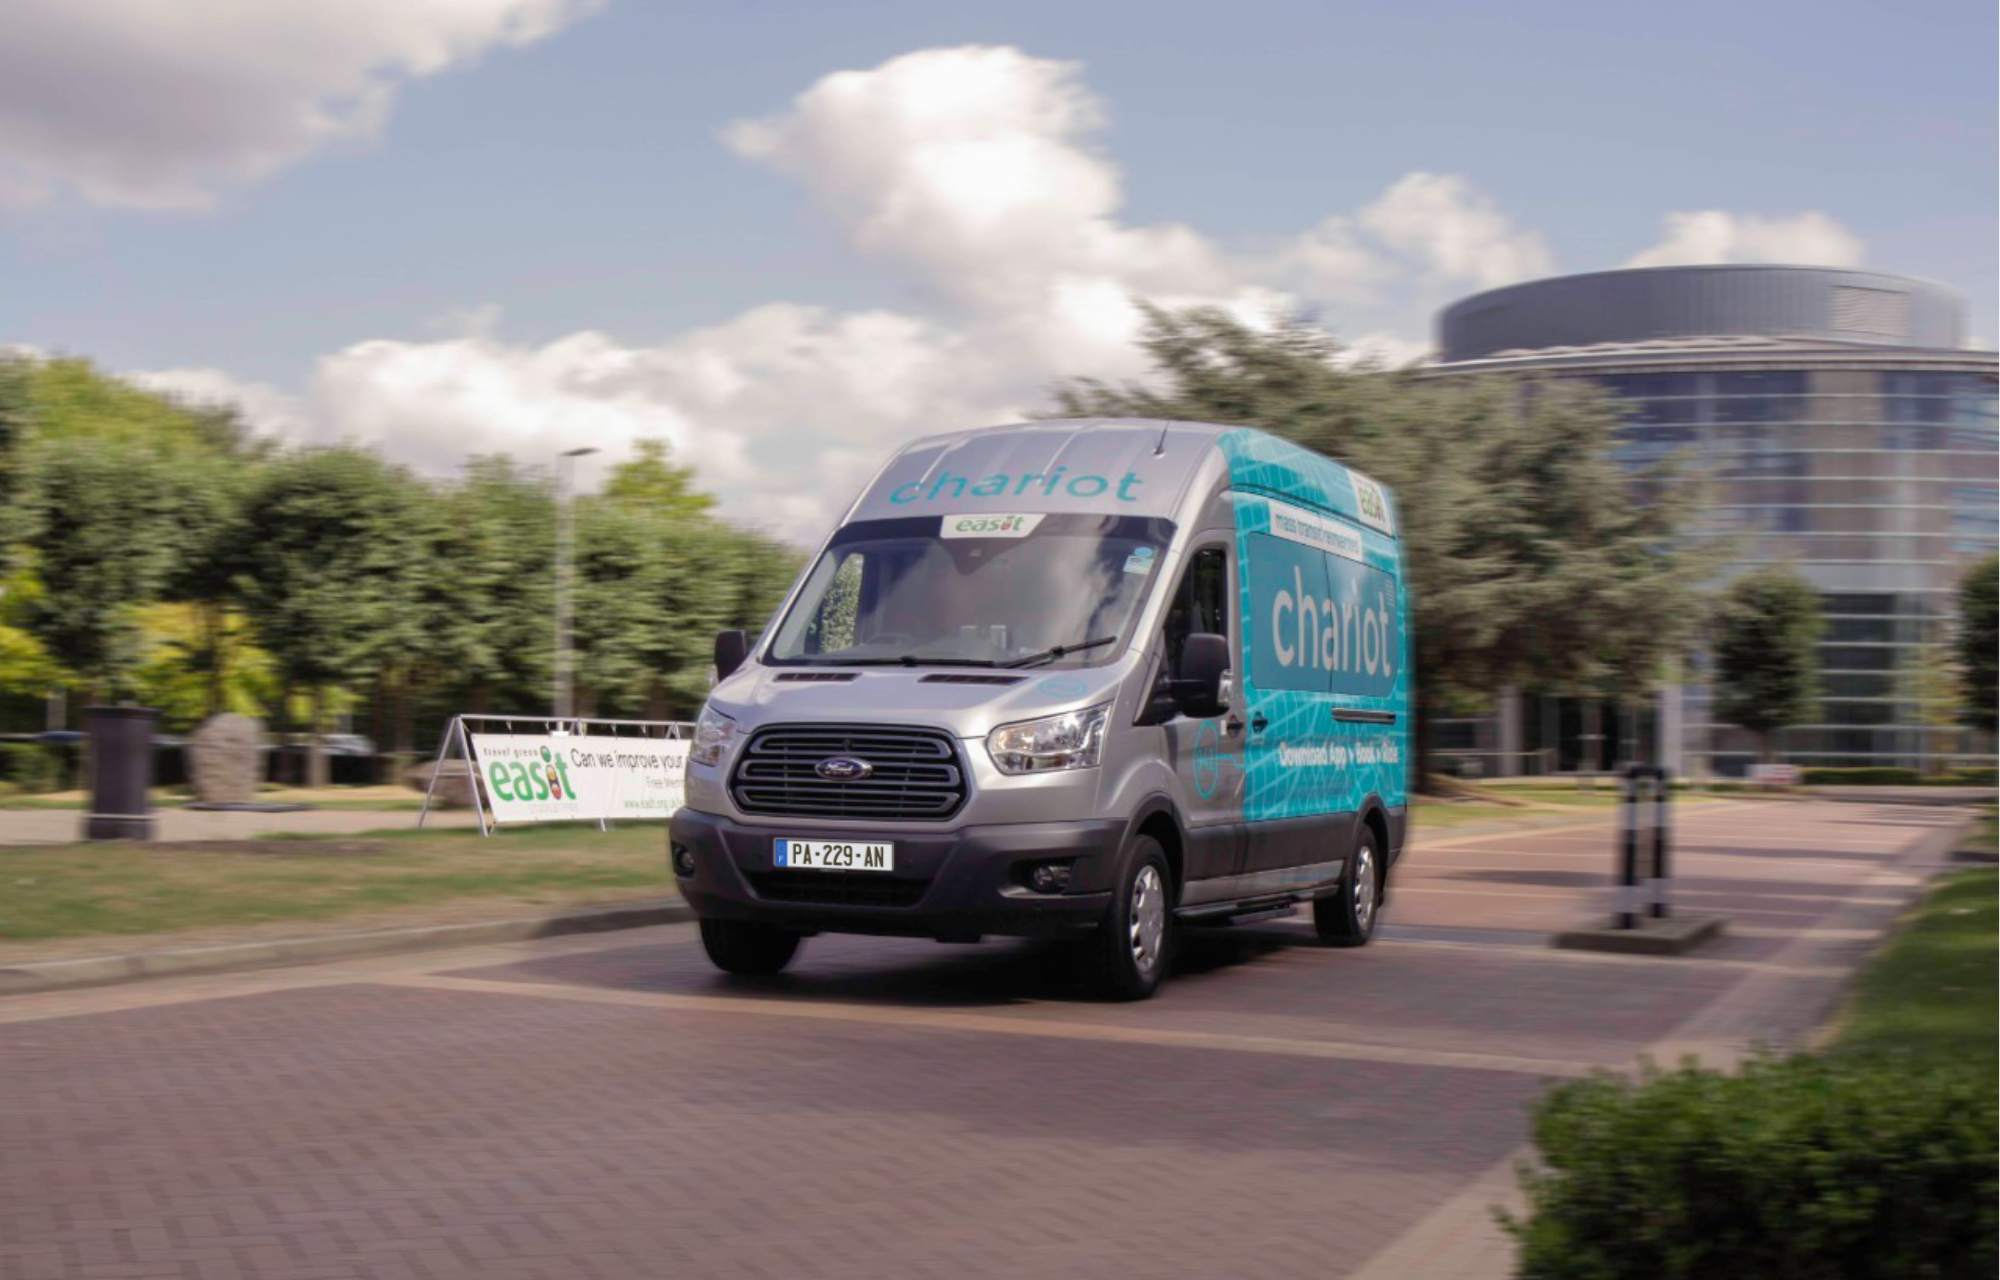 Pour faciliter les trajets domicile/travail à Londres, Ford étend son service de navettes à la demande Chariot aux entreprises